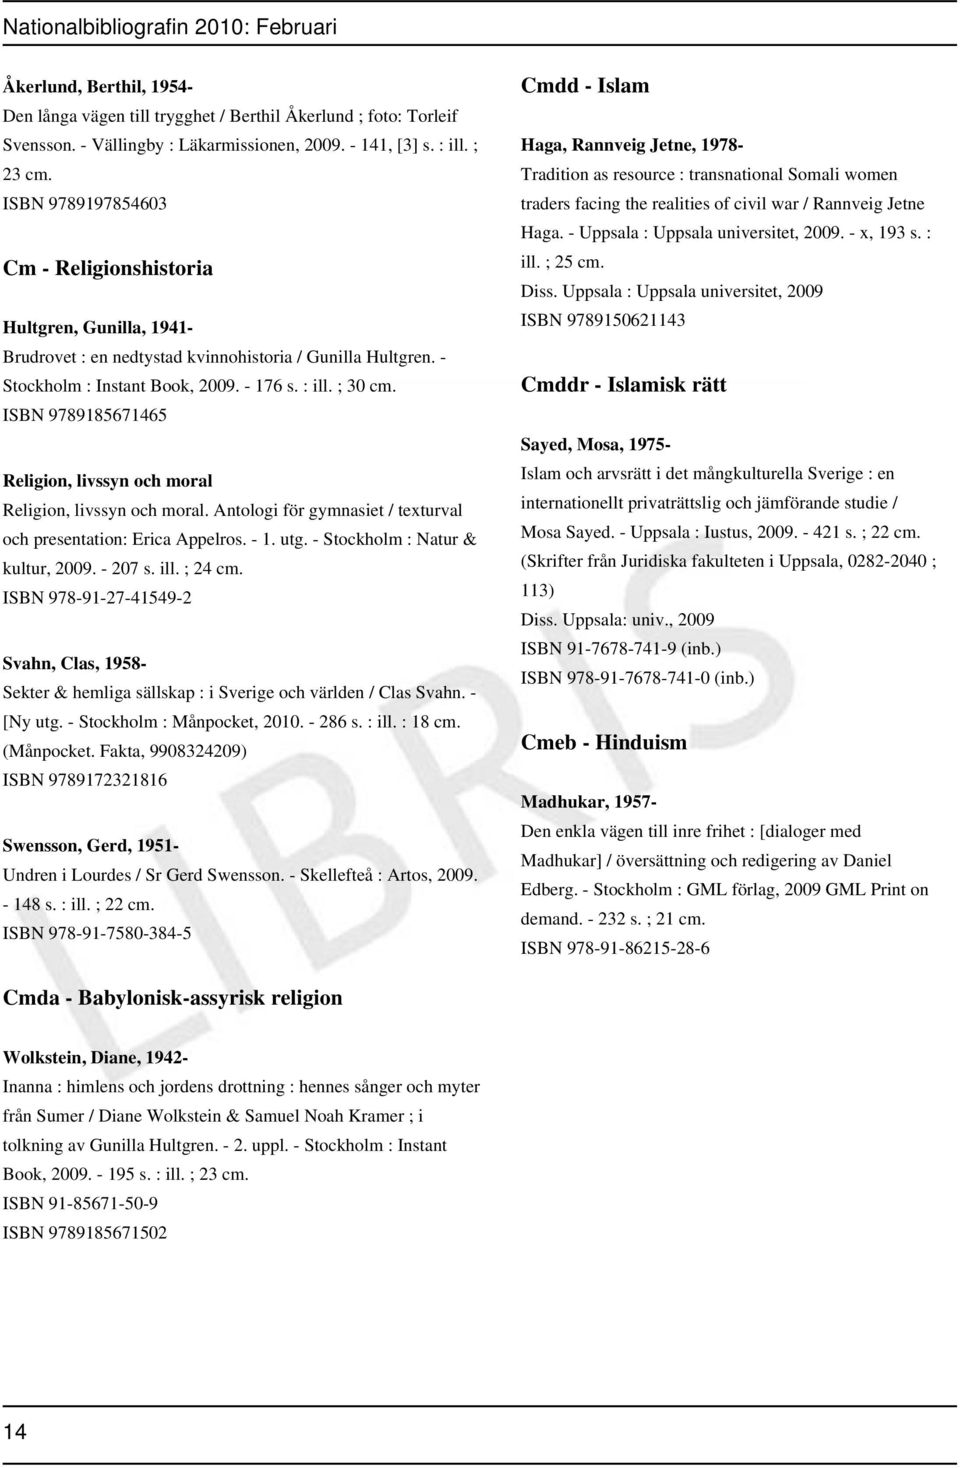 ; 30 ISBN 9789185671465 Religion, livssyn och moral Religion, livssyn och moral. Antologi för gymnasiet / texturval och presentation: Erica Appelros. - 1. utg. - Stockholm : Natur & kultur, 2009.